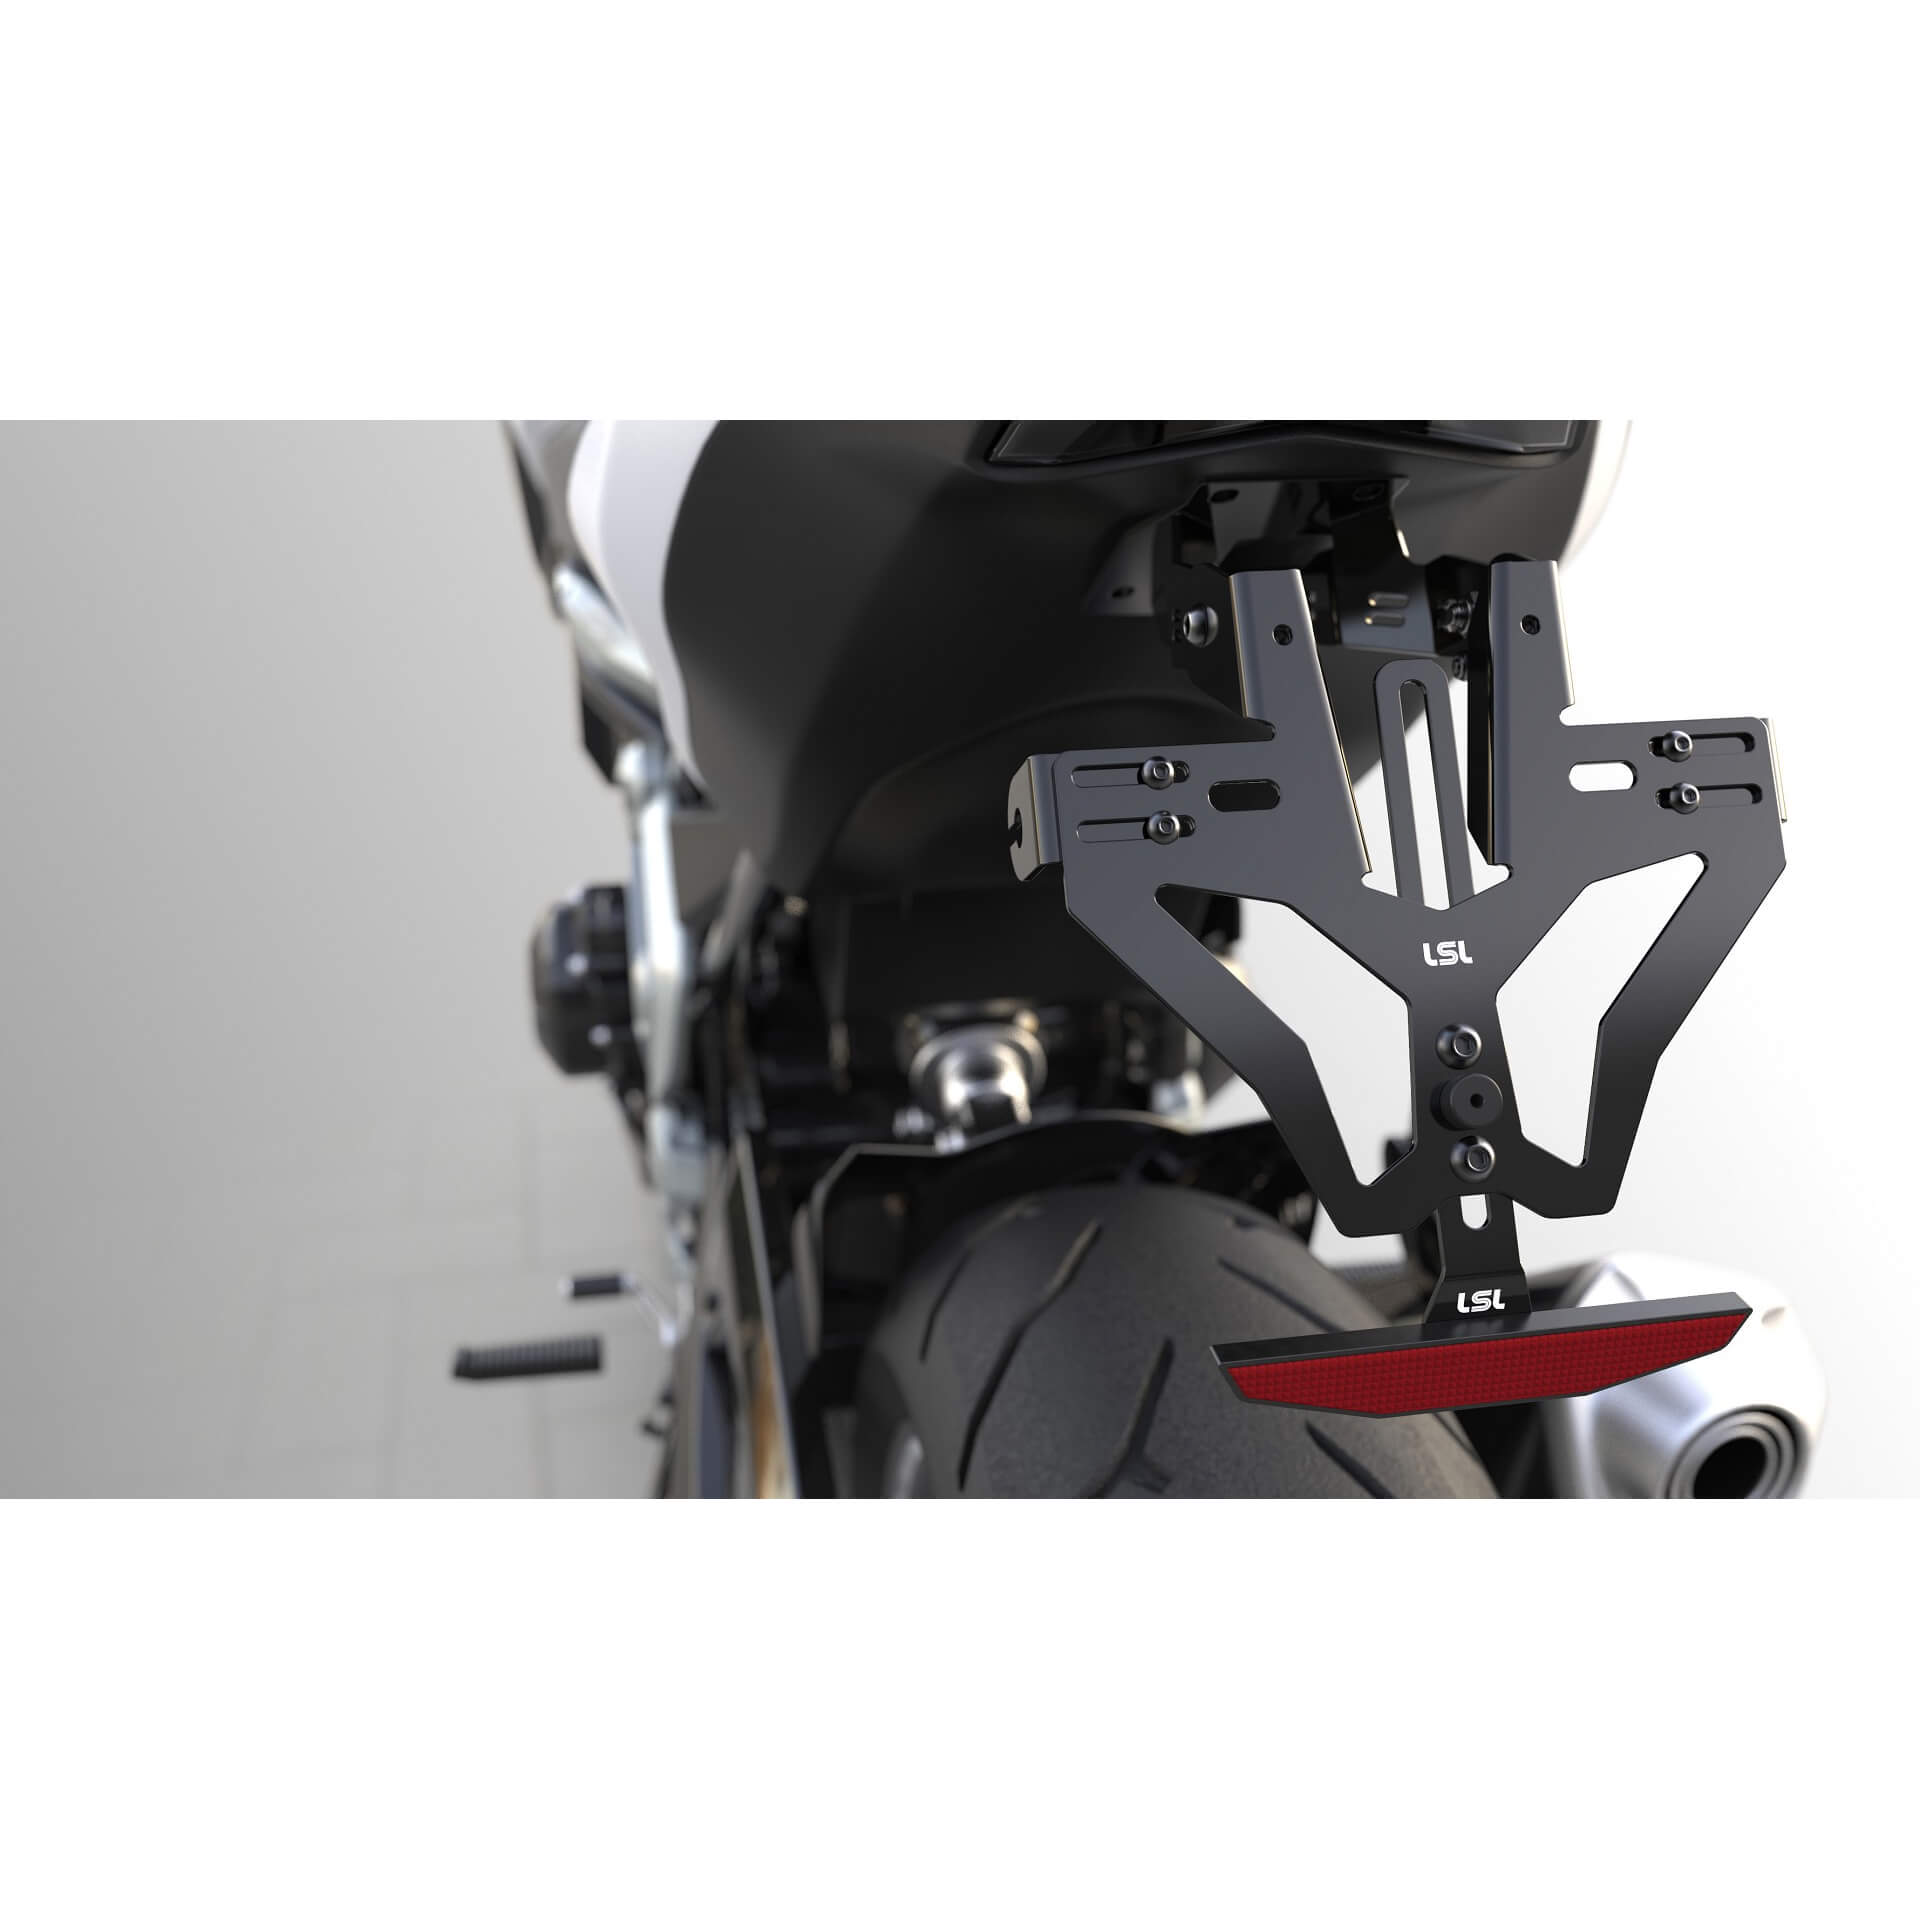 lsl MANTIS-RS für Ducati Monster, ohne Kennzeichenbeleuchtung